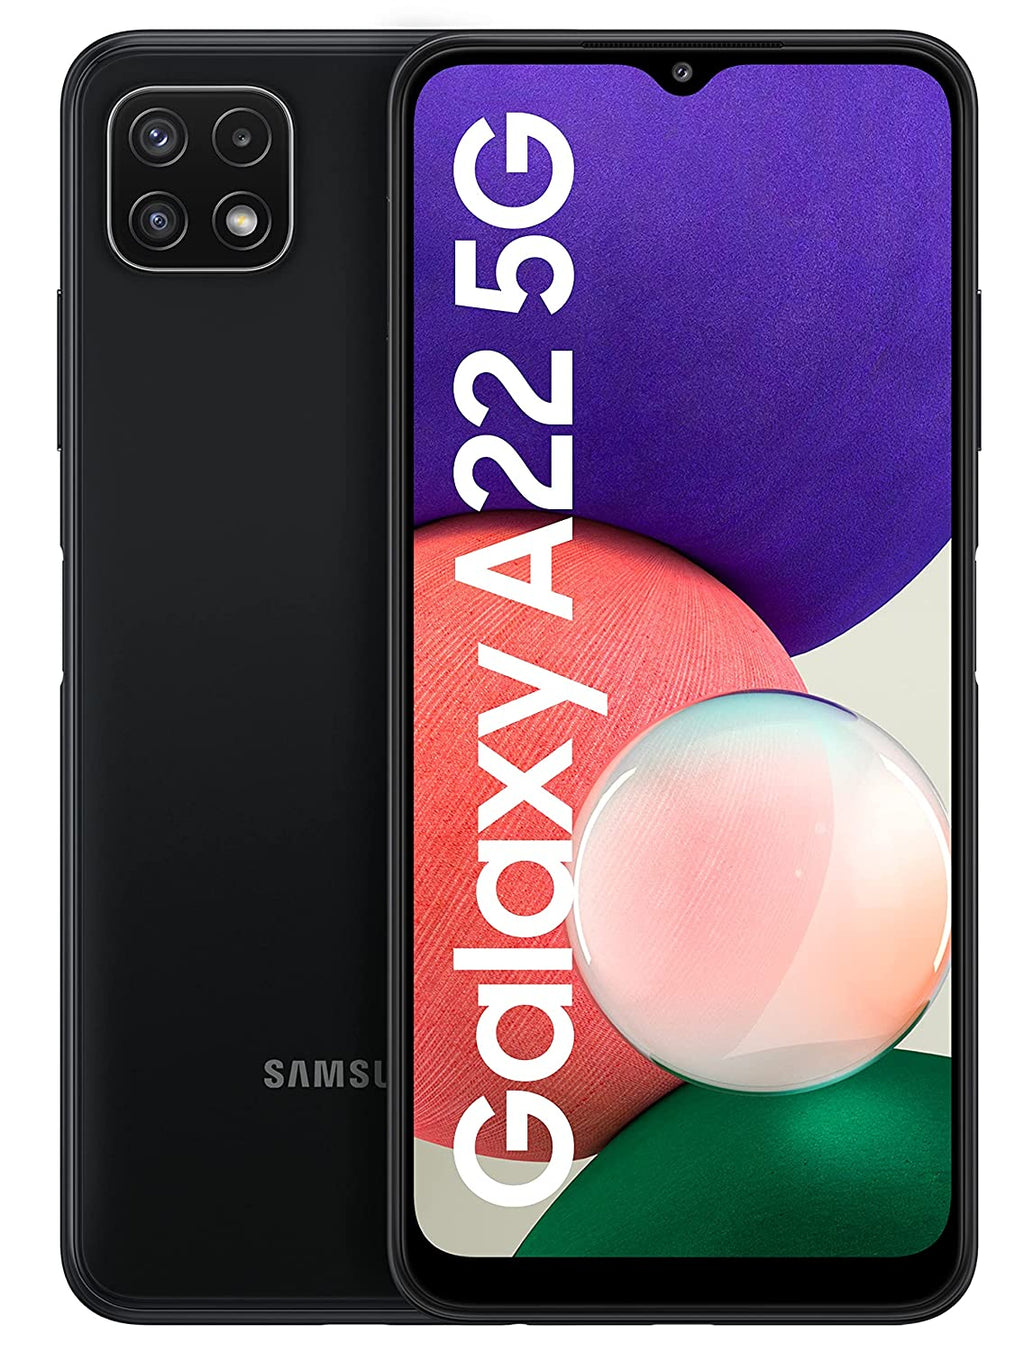 Samsung Galaxy A22 5G Gray 8GB RAM 128GB Storage